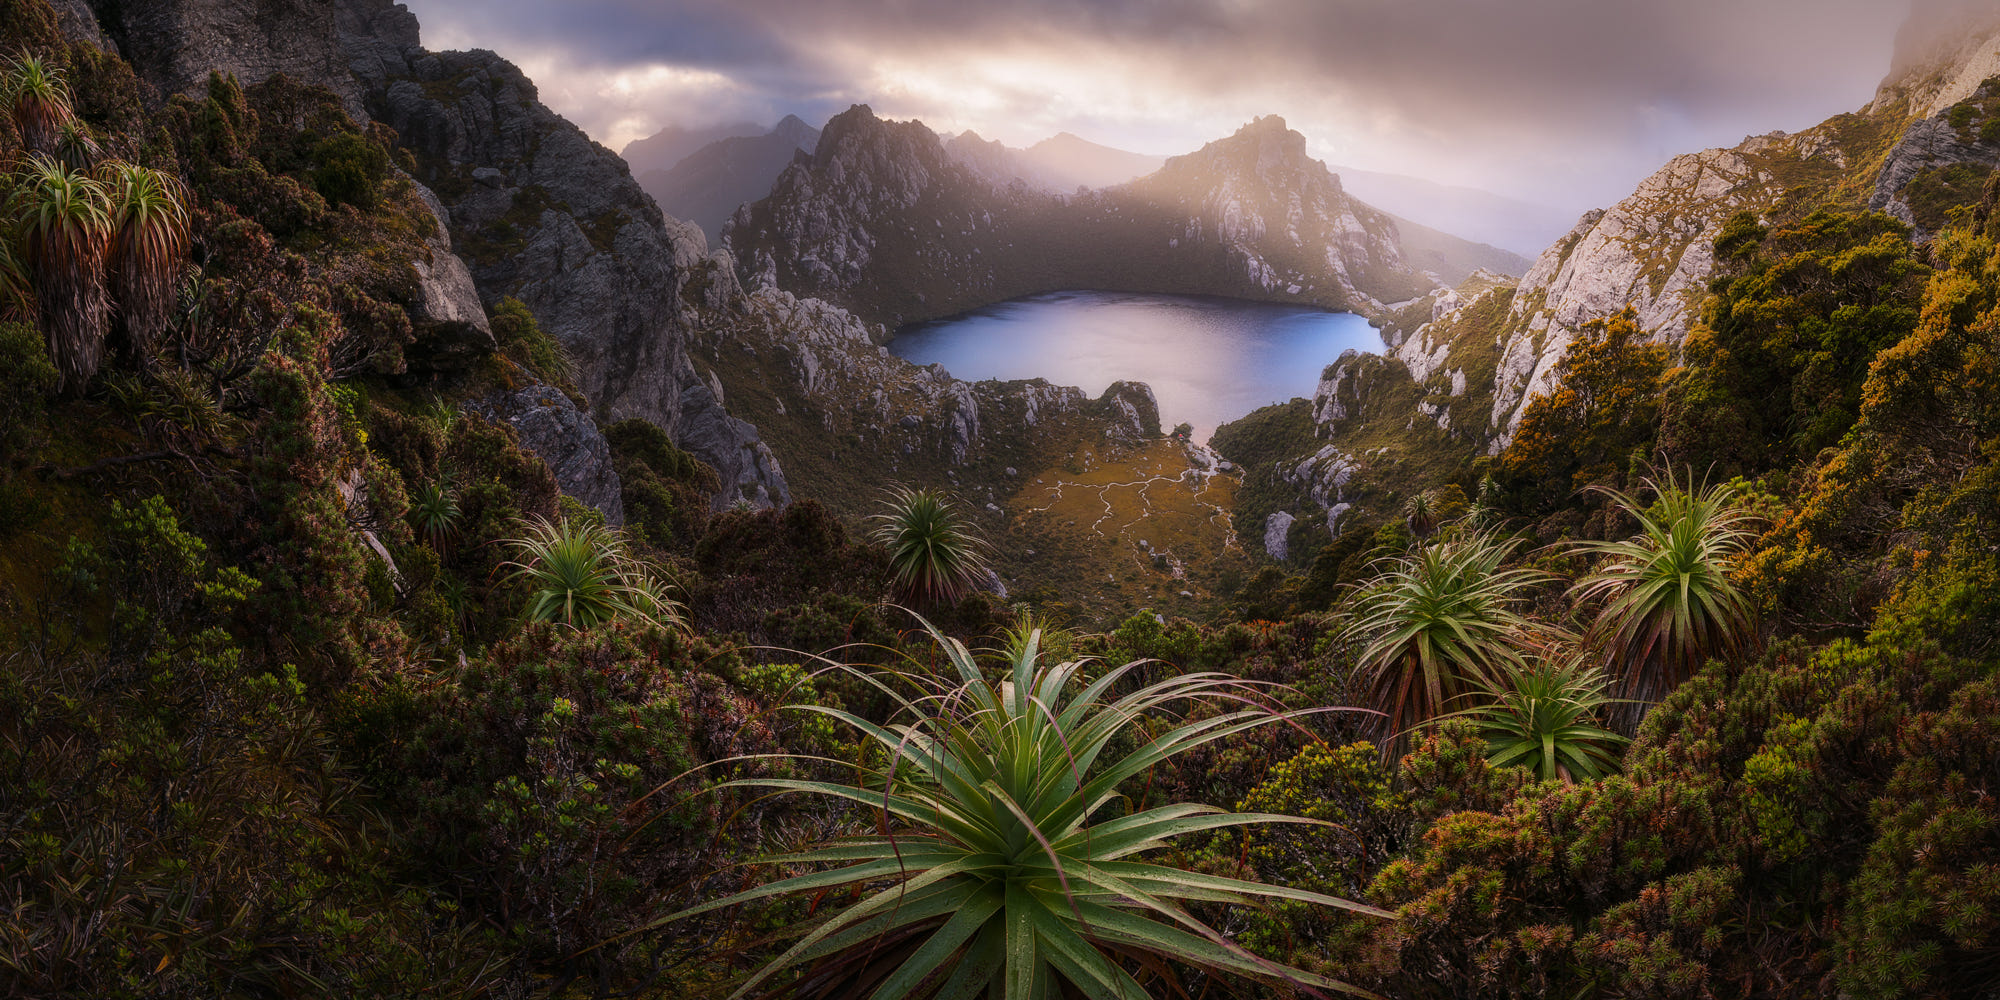 General 2000x1000 500px nature garden Australia Tasmania landscape mountains southwest national park plants